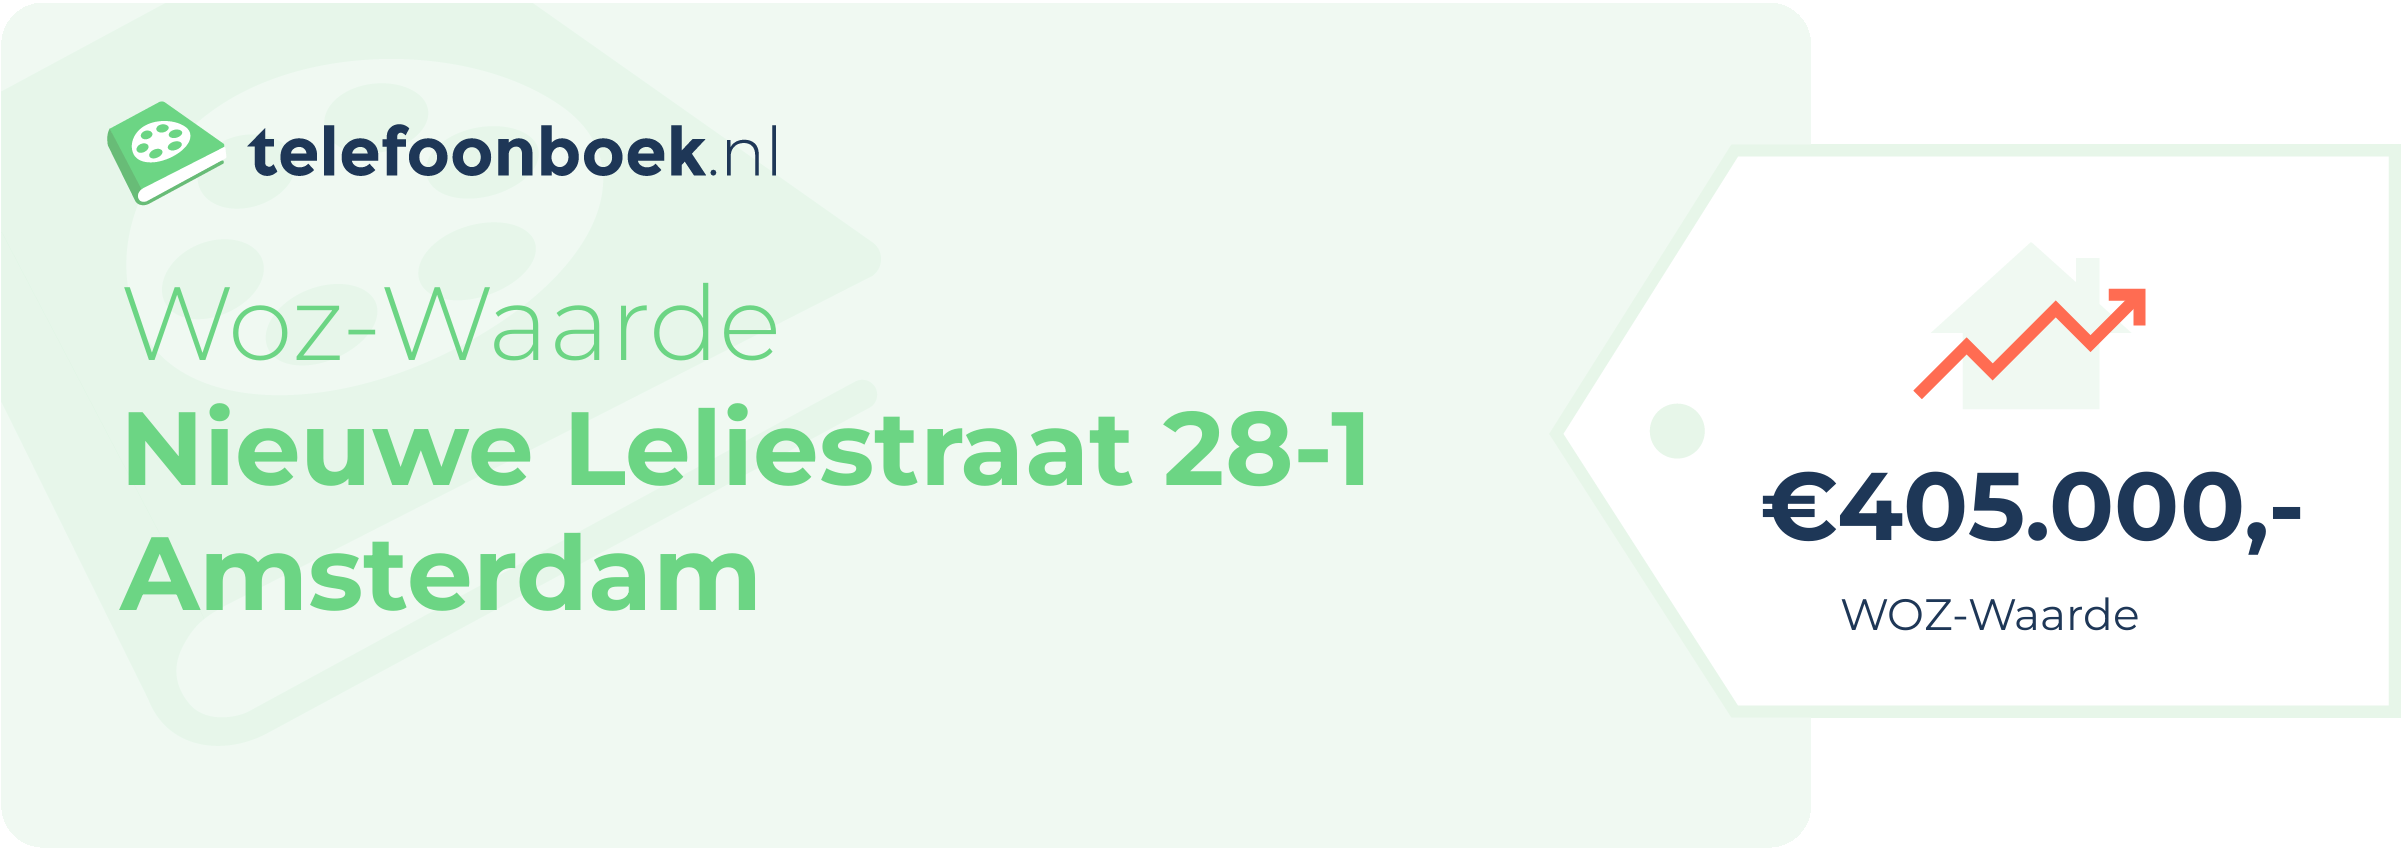 WOZ-waarde Nieuwe Leliestraat 28-1 Amsterdam